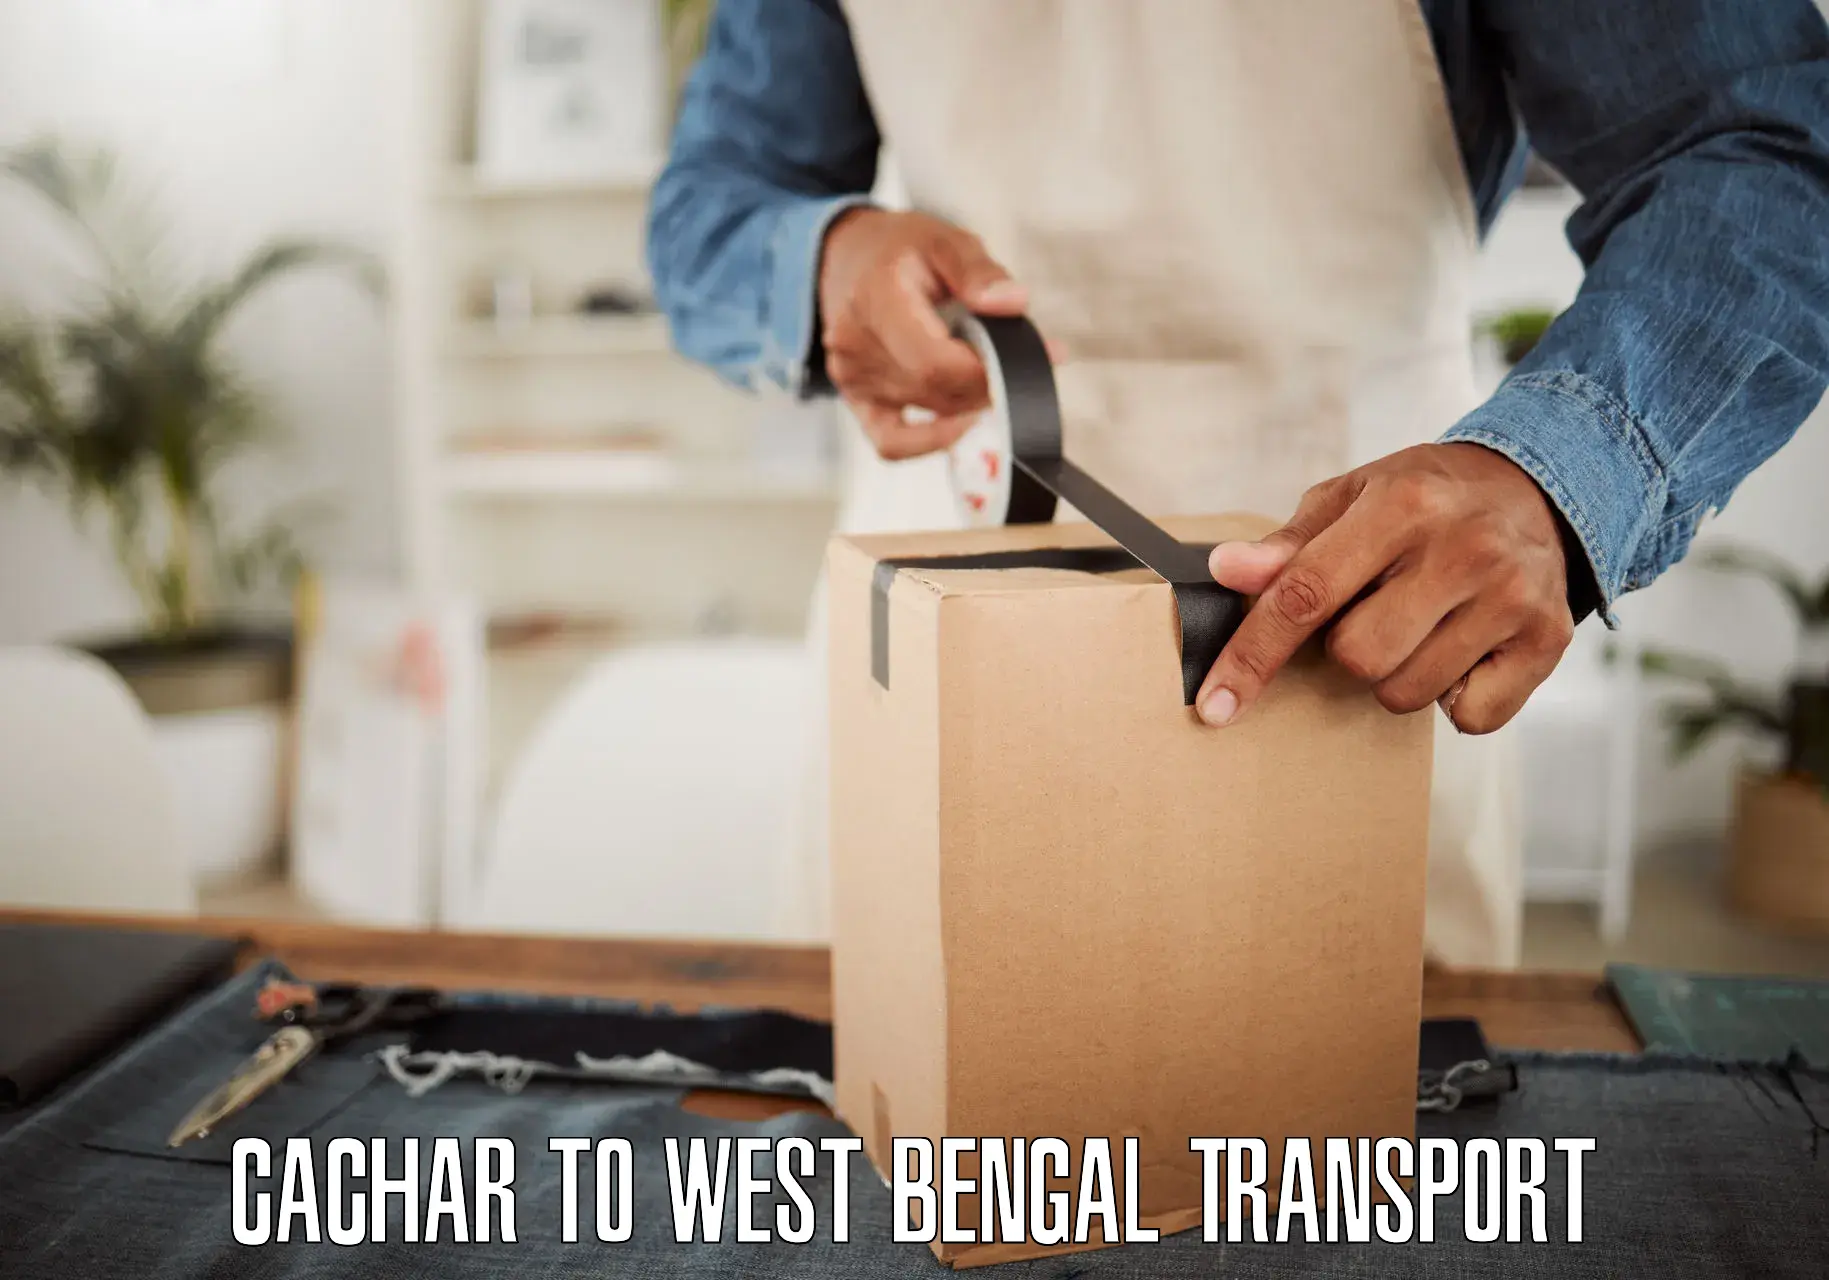 Road transport online services Cachar to Swarupnagar